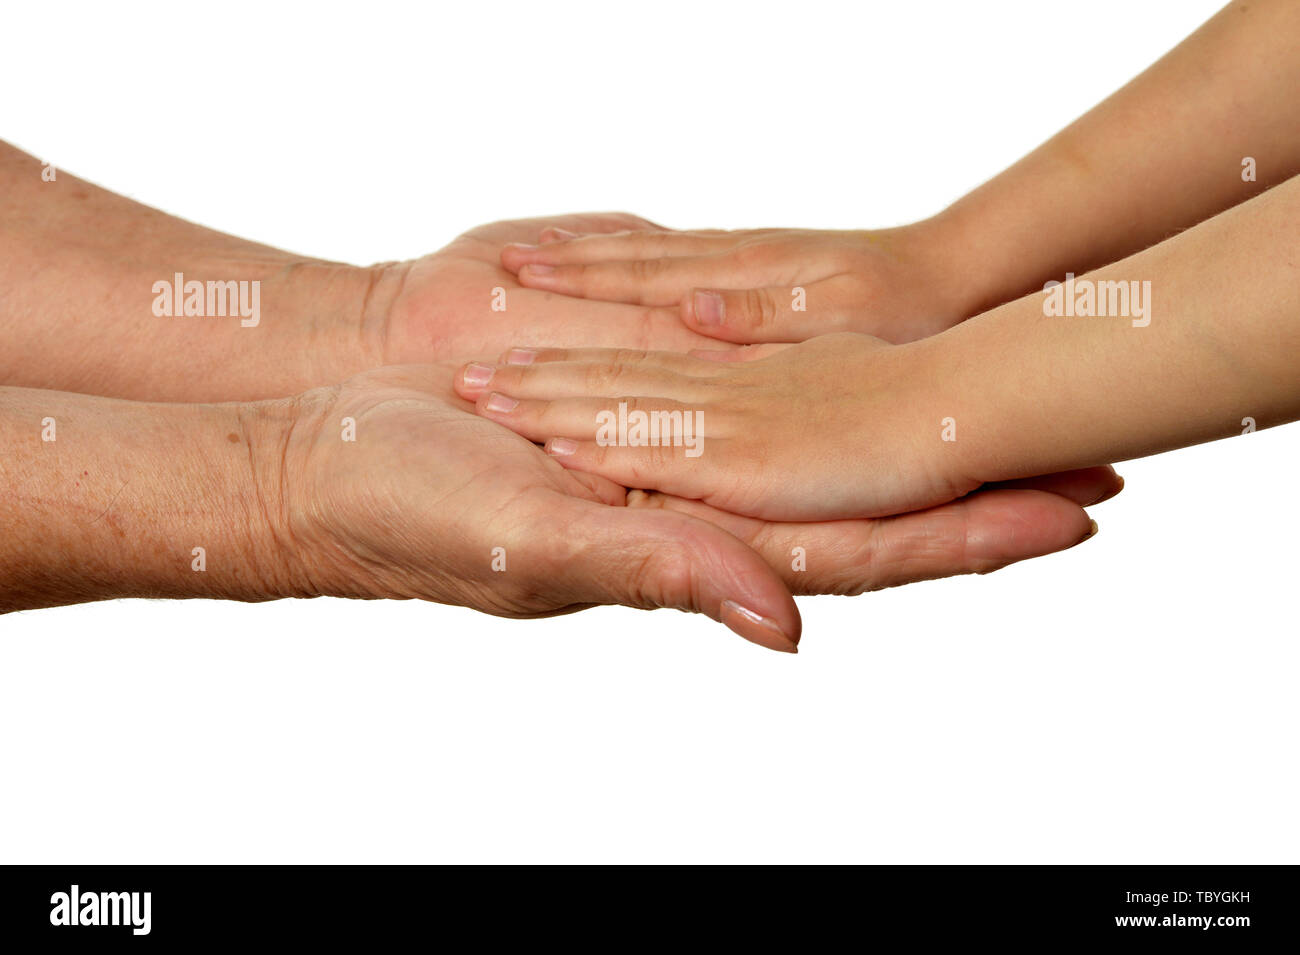 Nonne mani con bambina mani isolati su sfondo bianco Foto Stock